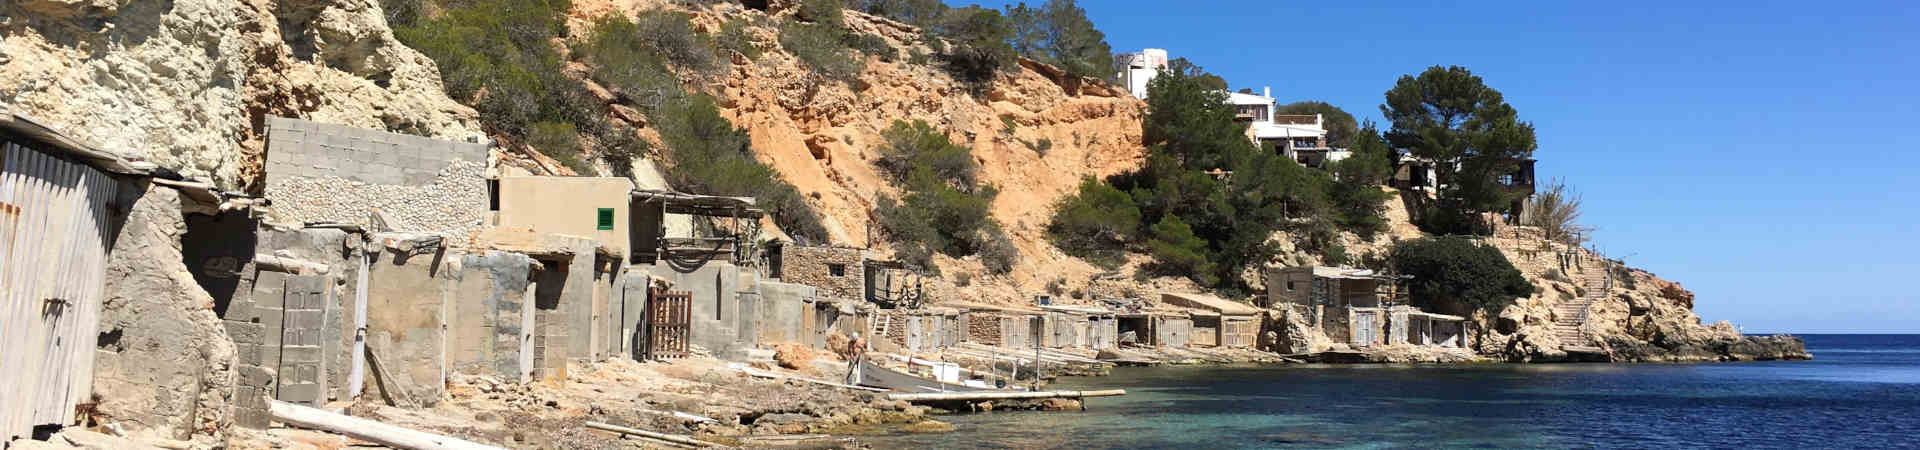 Imagen recurso del puerto de destino Ibiza para la ruta en ferry Valencia - Ibiza